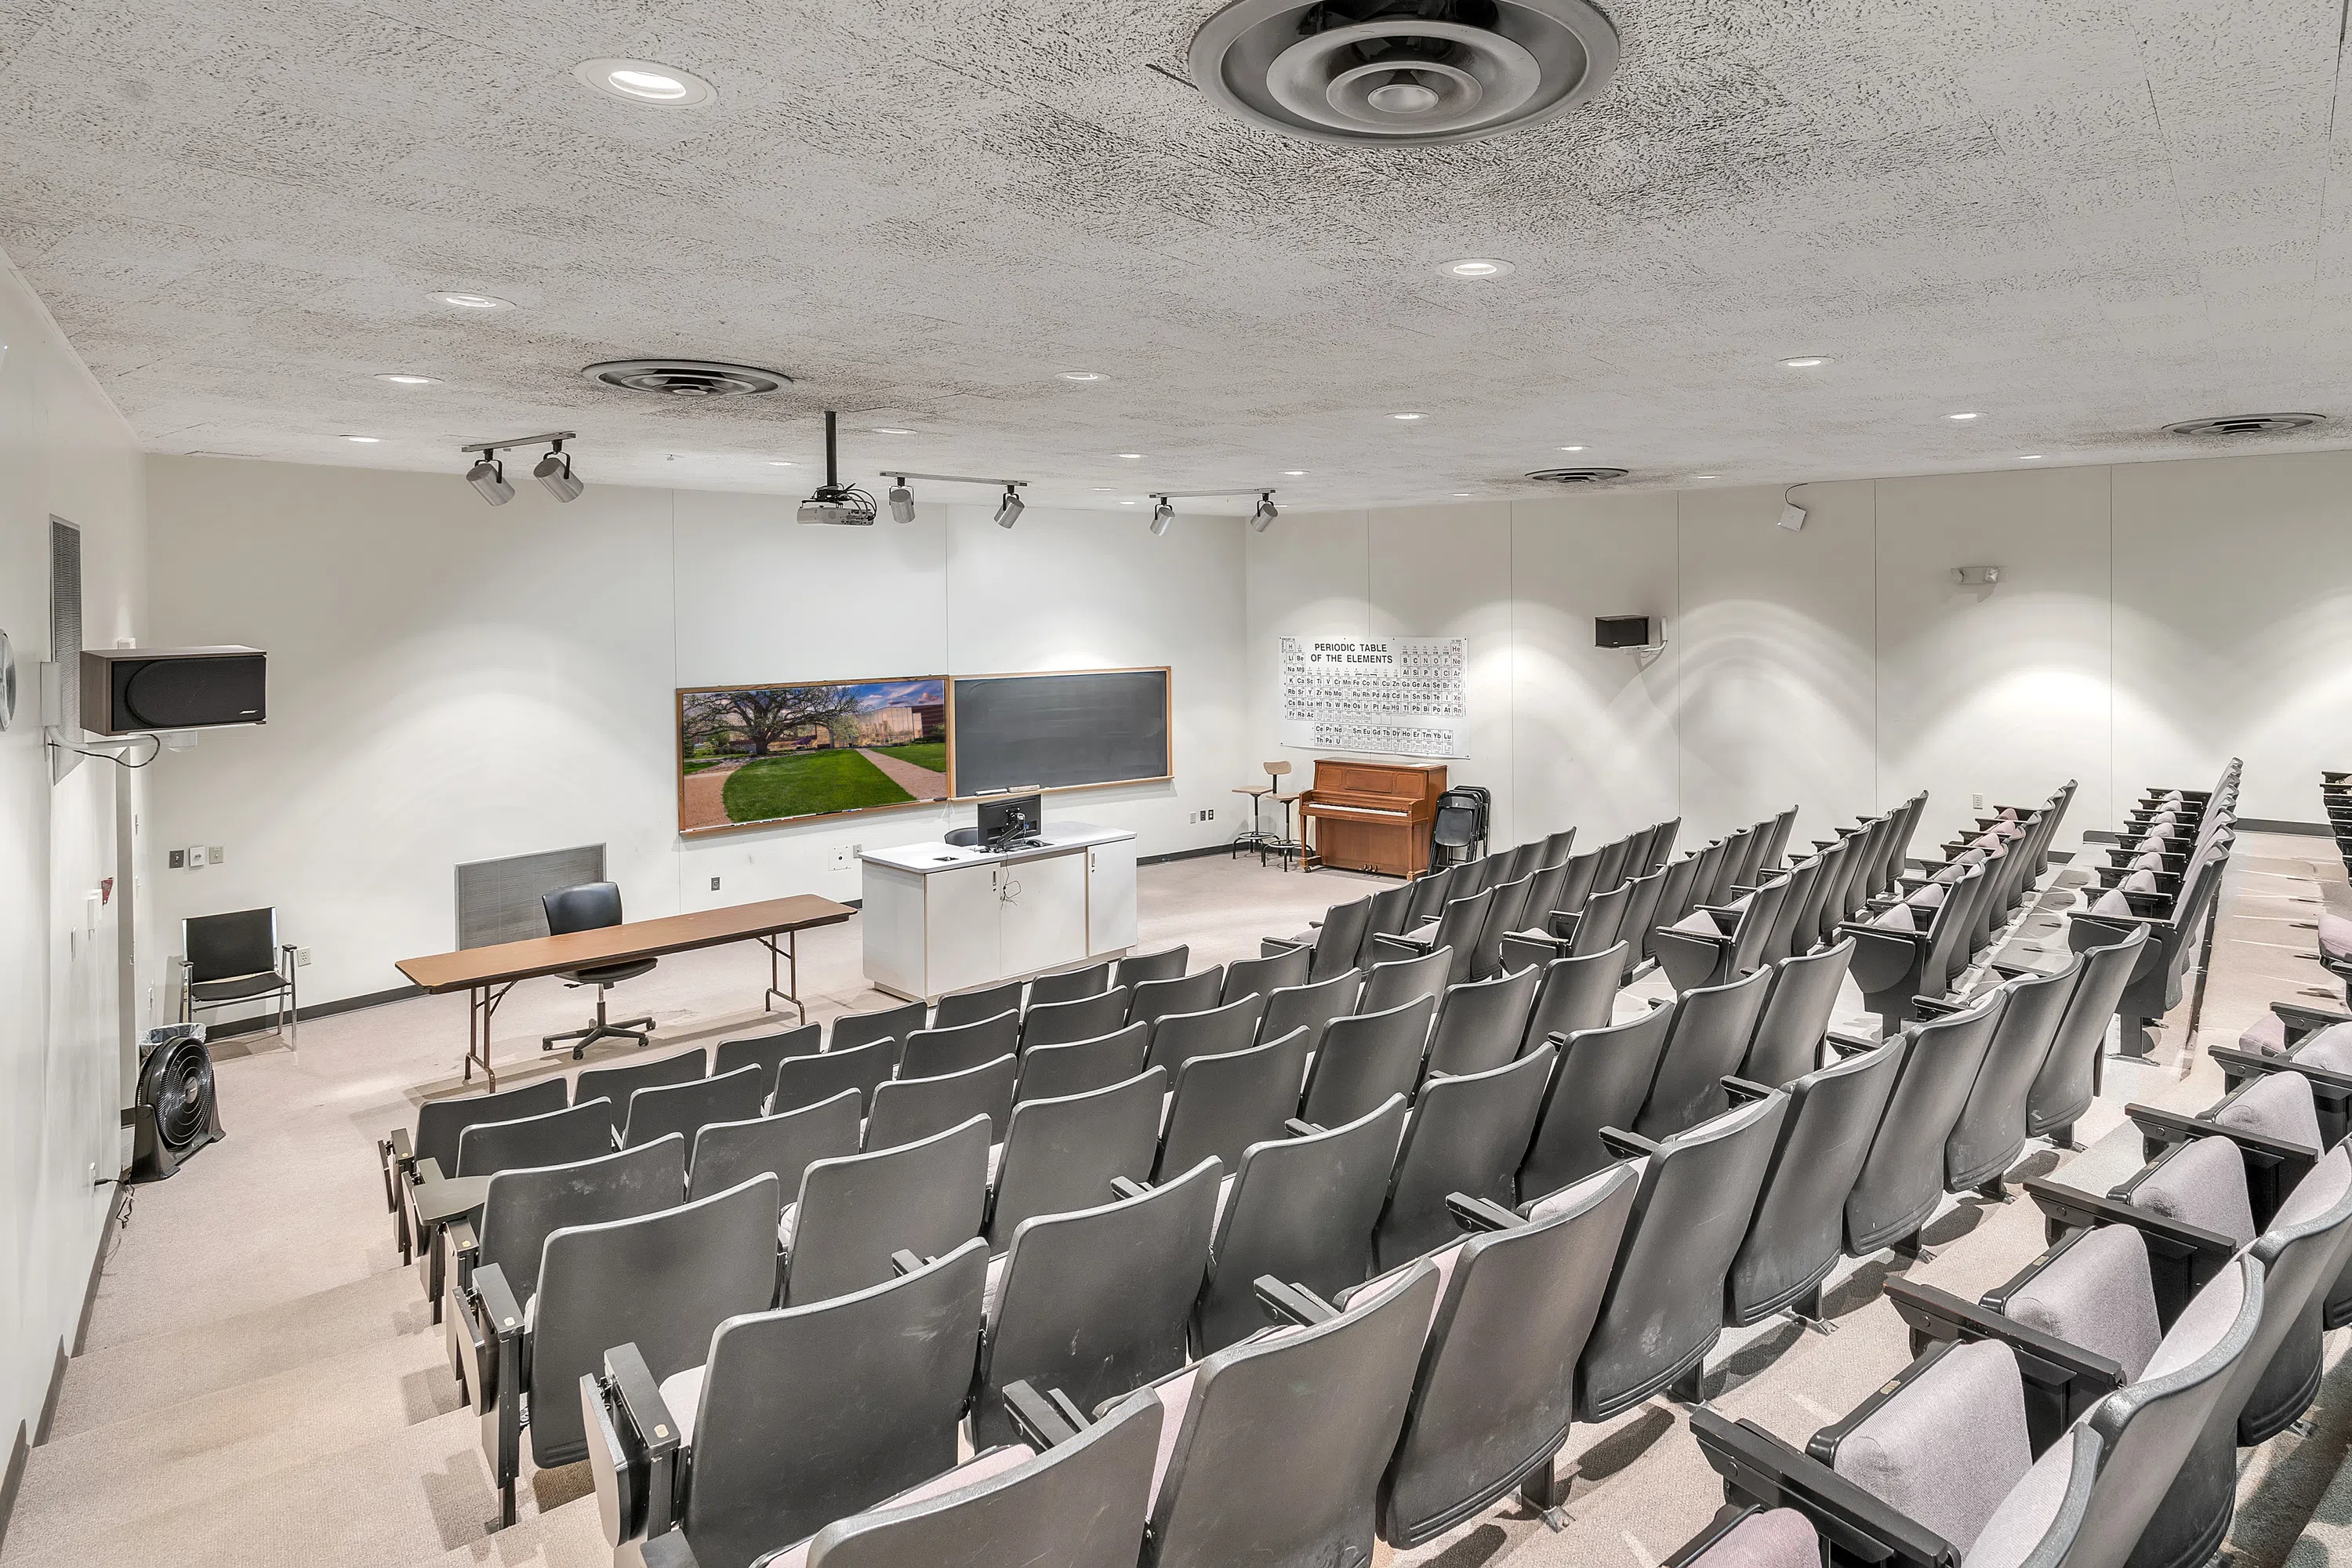 Interior of classroom auditorium